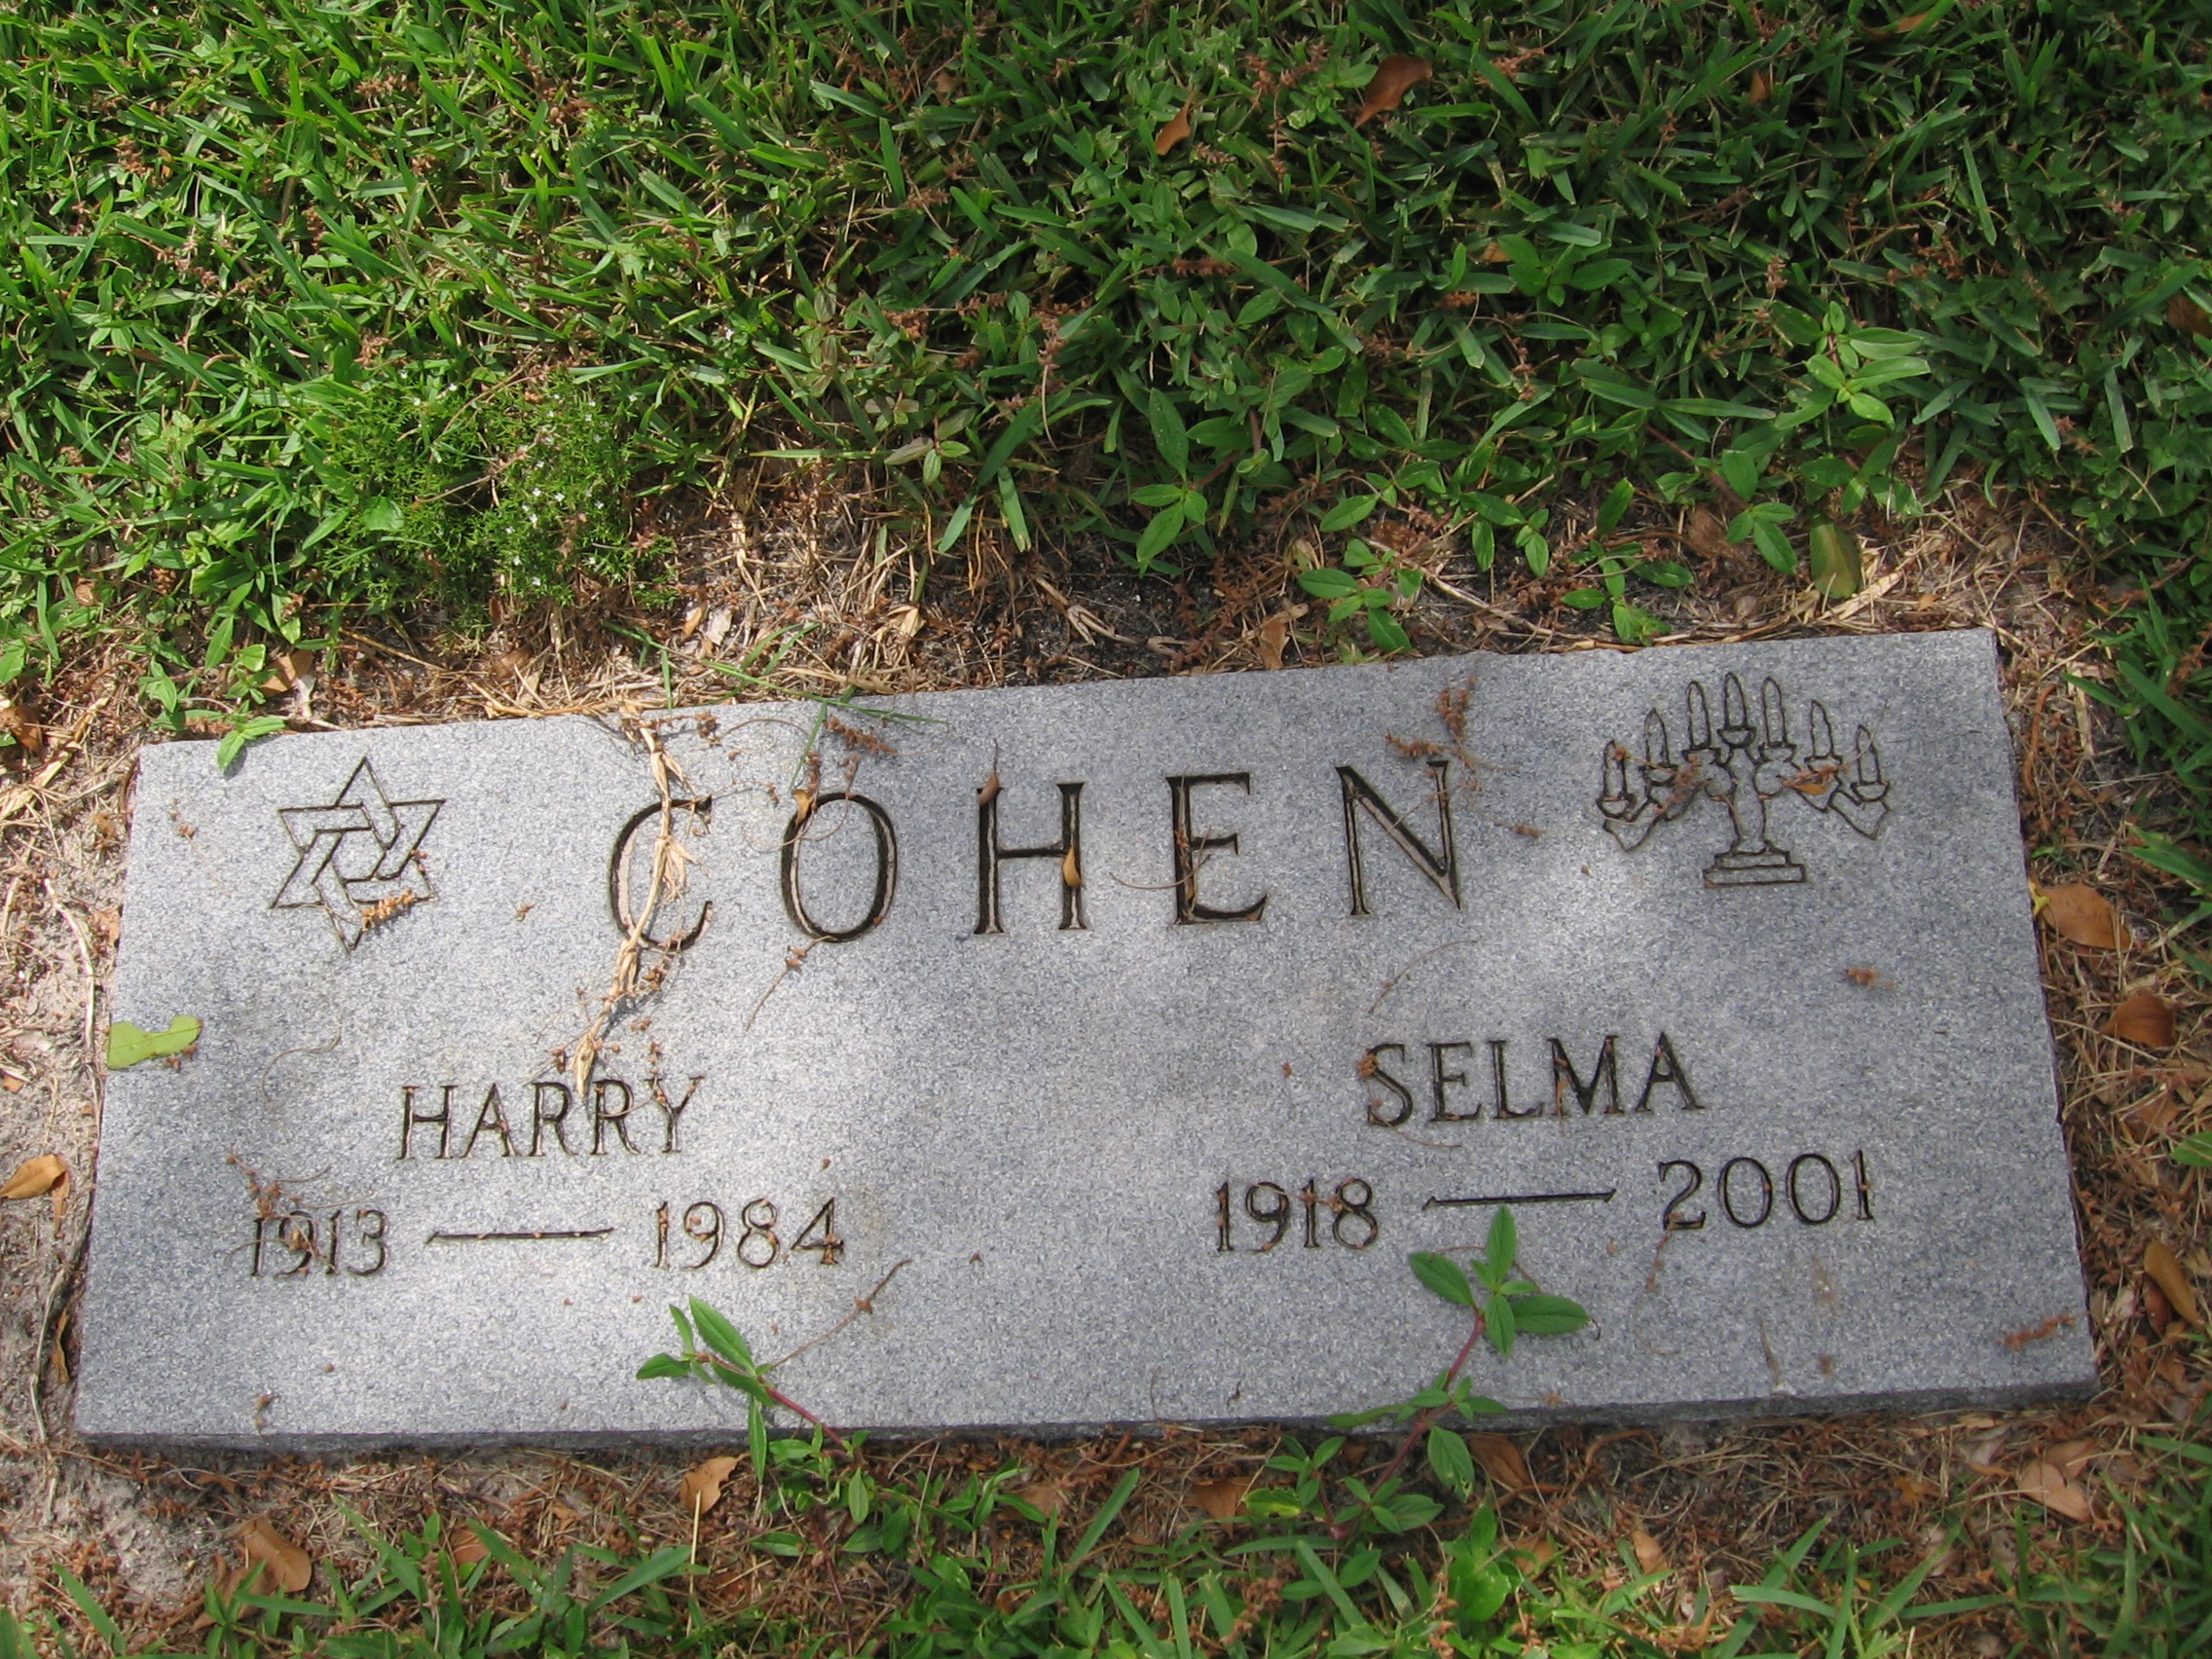 Harry Cohen